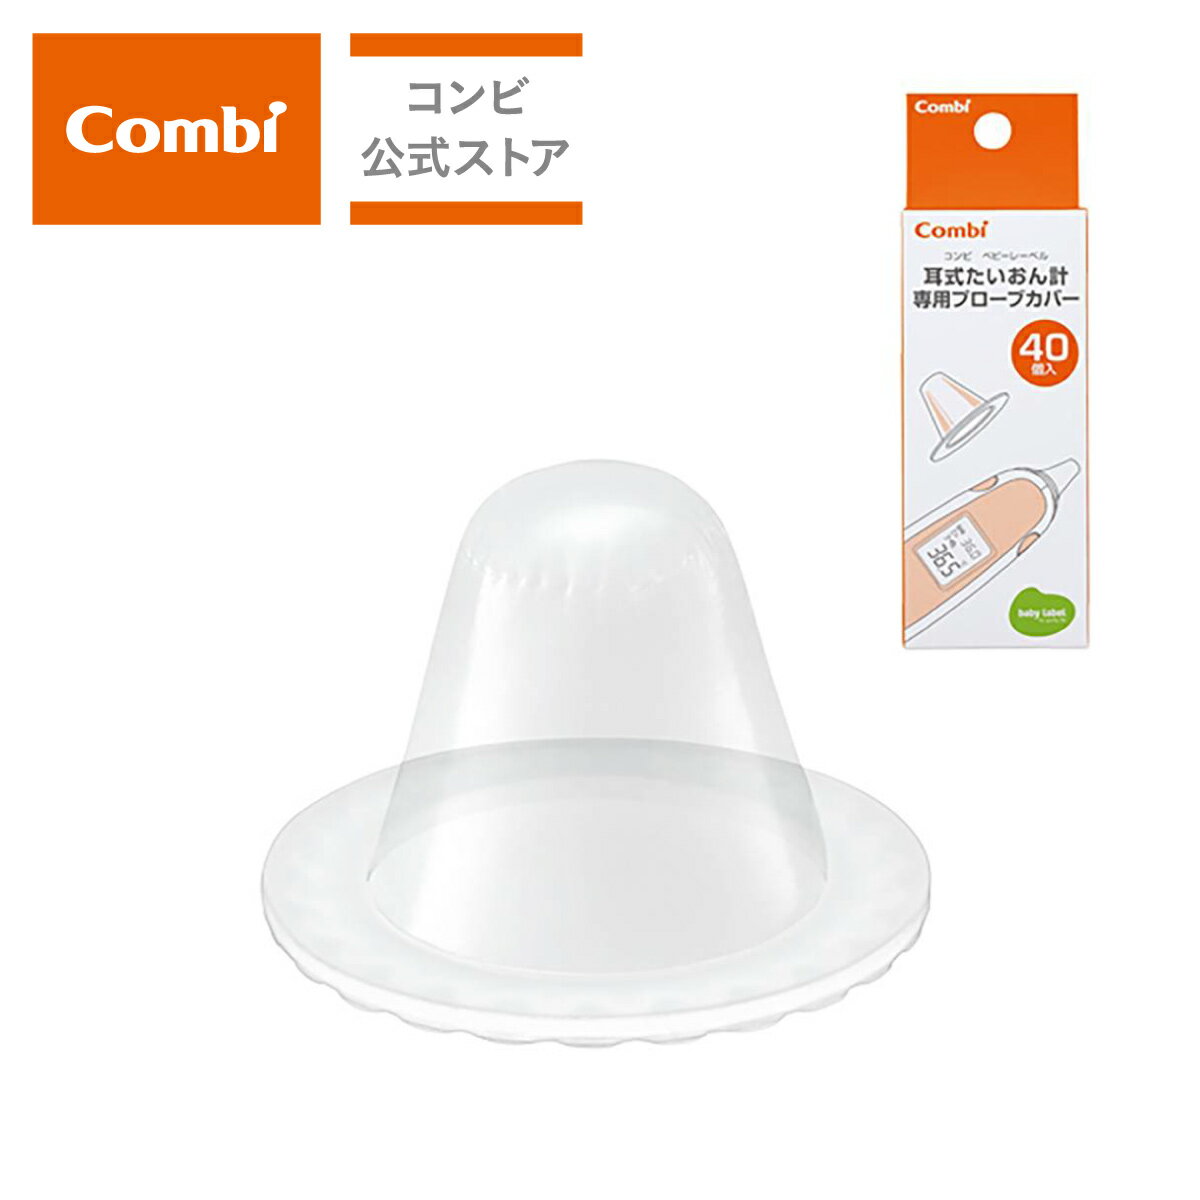 【コンビ公式】Combi コンビ ベビーレーベル 耳式たいおん計 専用プローブカバー | 耳式たいおん計オプション